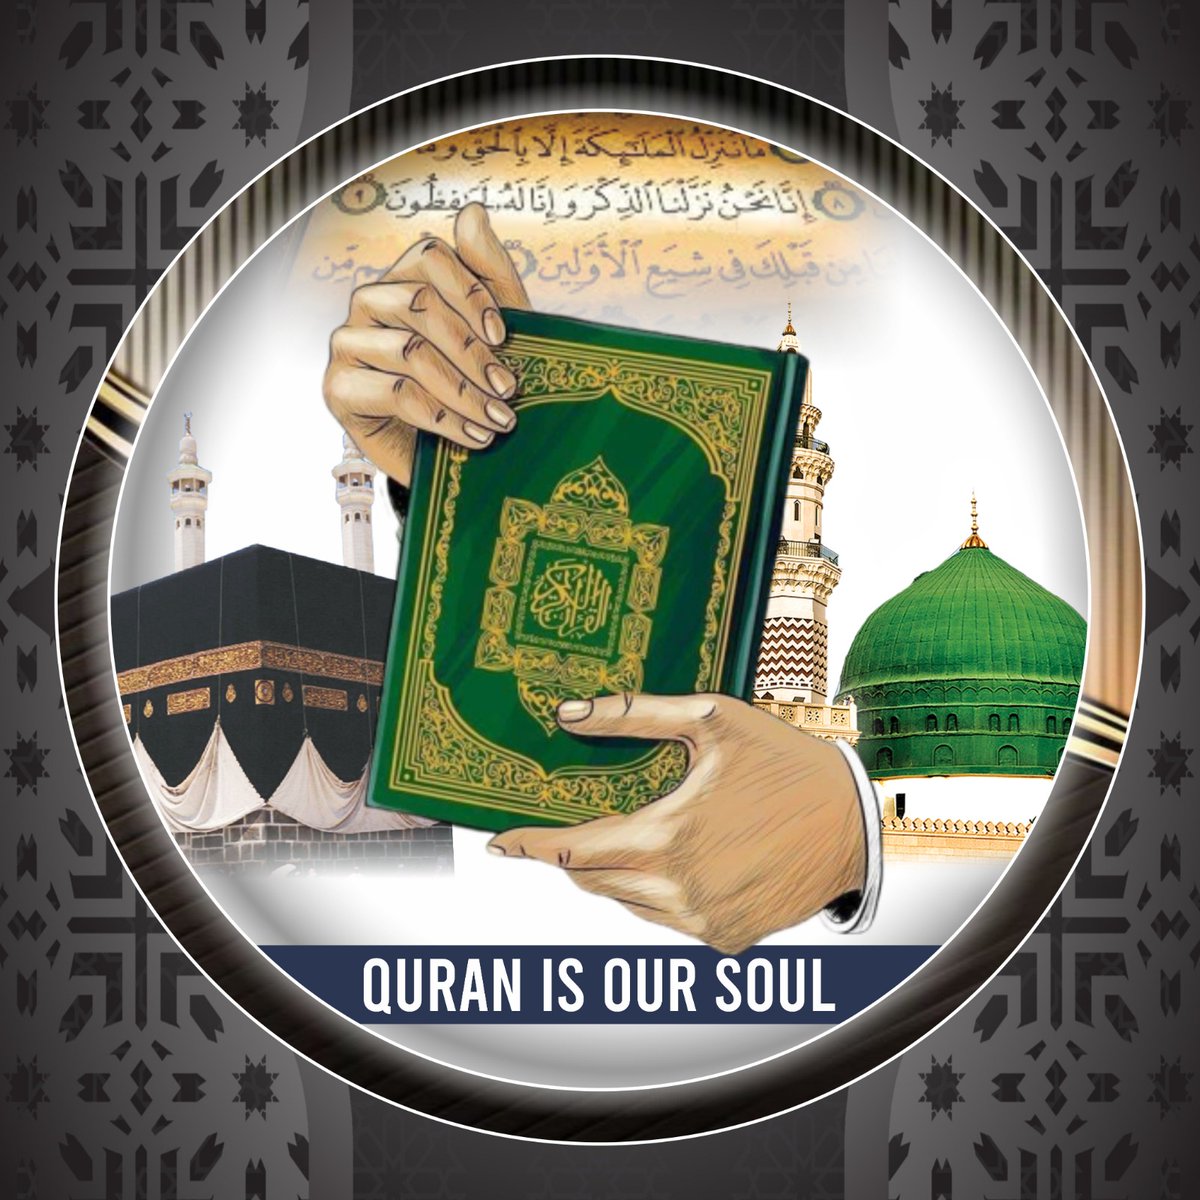 جس جس مسلمان کی ریڈ لائن قران پاک ھے وہ اس ٹیوٹ کو زیادہ سے زیادہ ریٹیوٹ کریں تاکہ کافروں تک ہر مسلمان کا پیغام پہنچایا جا سکے 🙏🏻 #Quran_is_our_soul